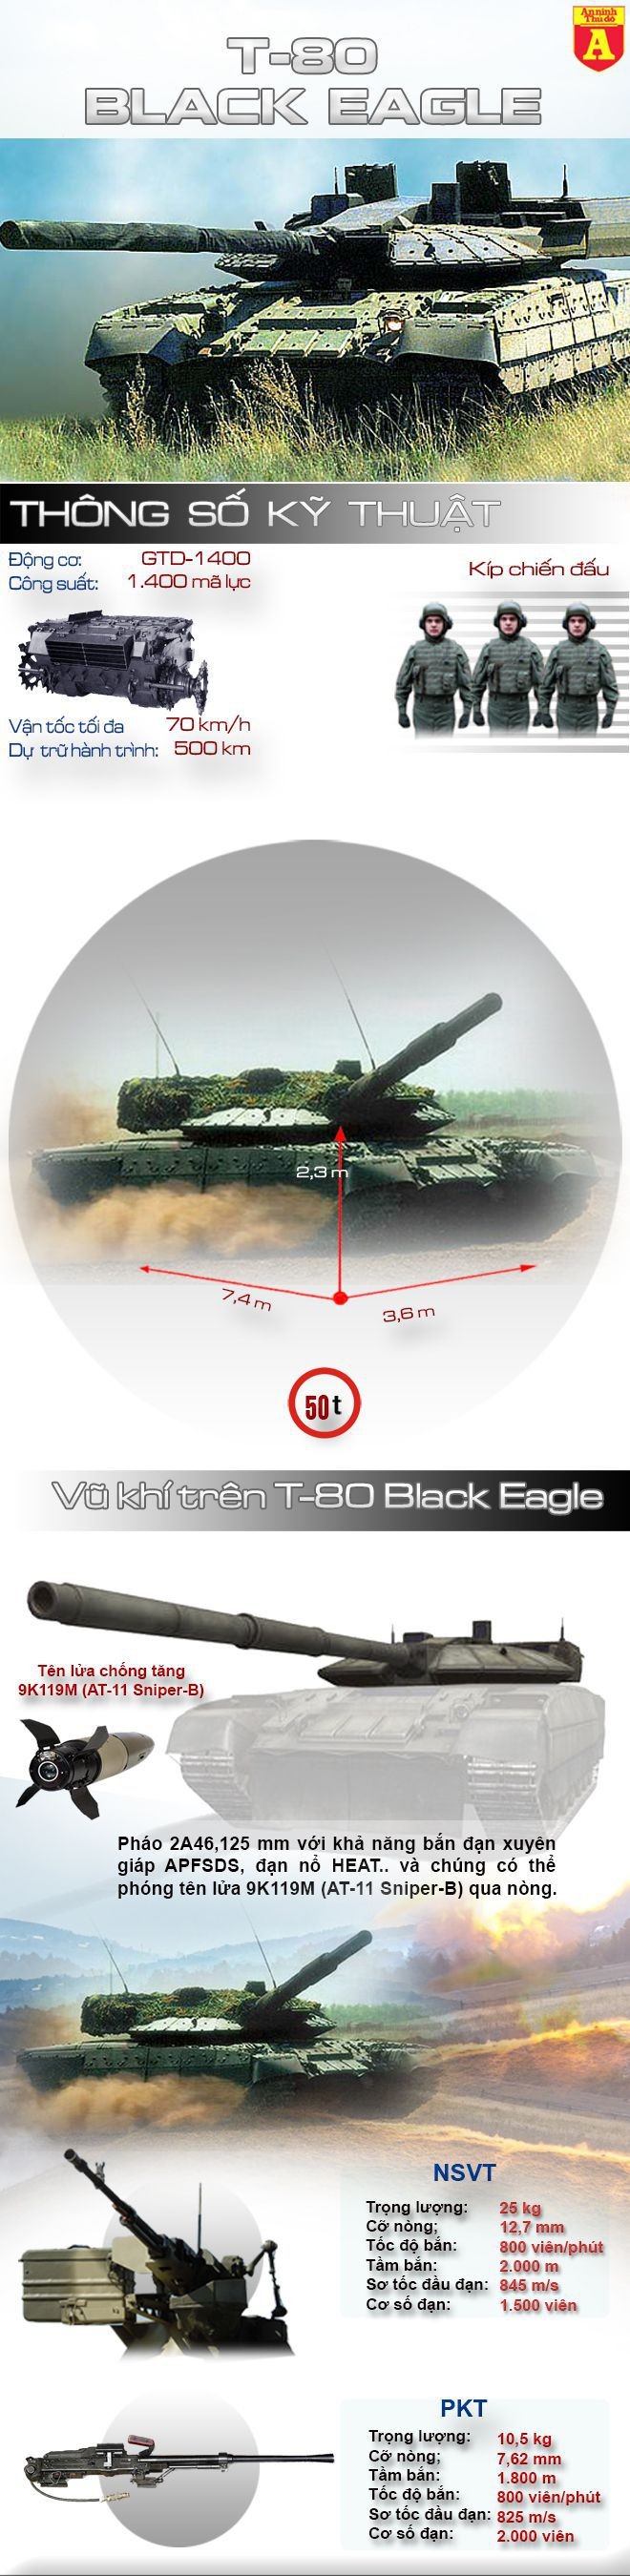 [Infographic] T-80UM2 Black Eagle – Siêu tăng chết yểu của Nga ảnh 1